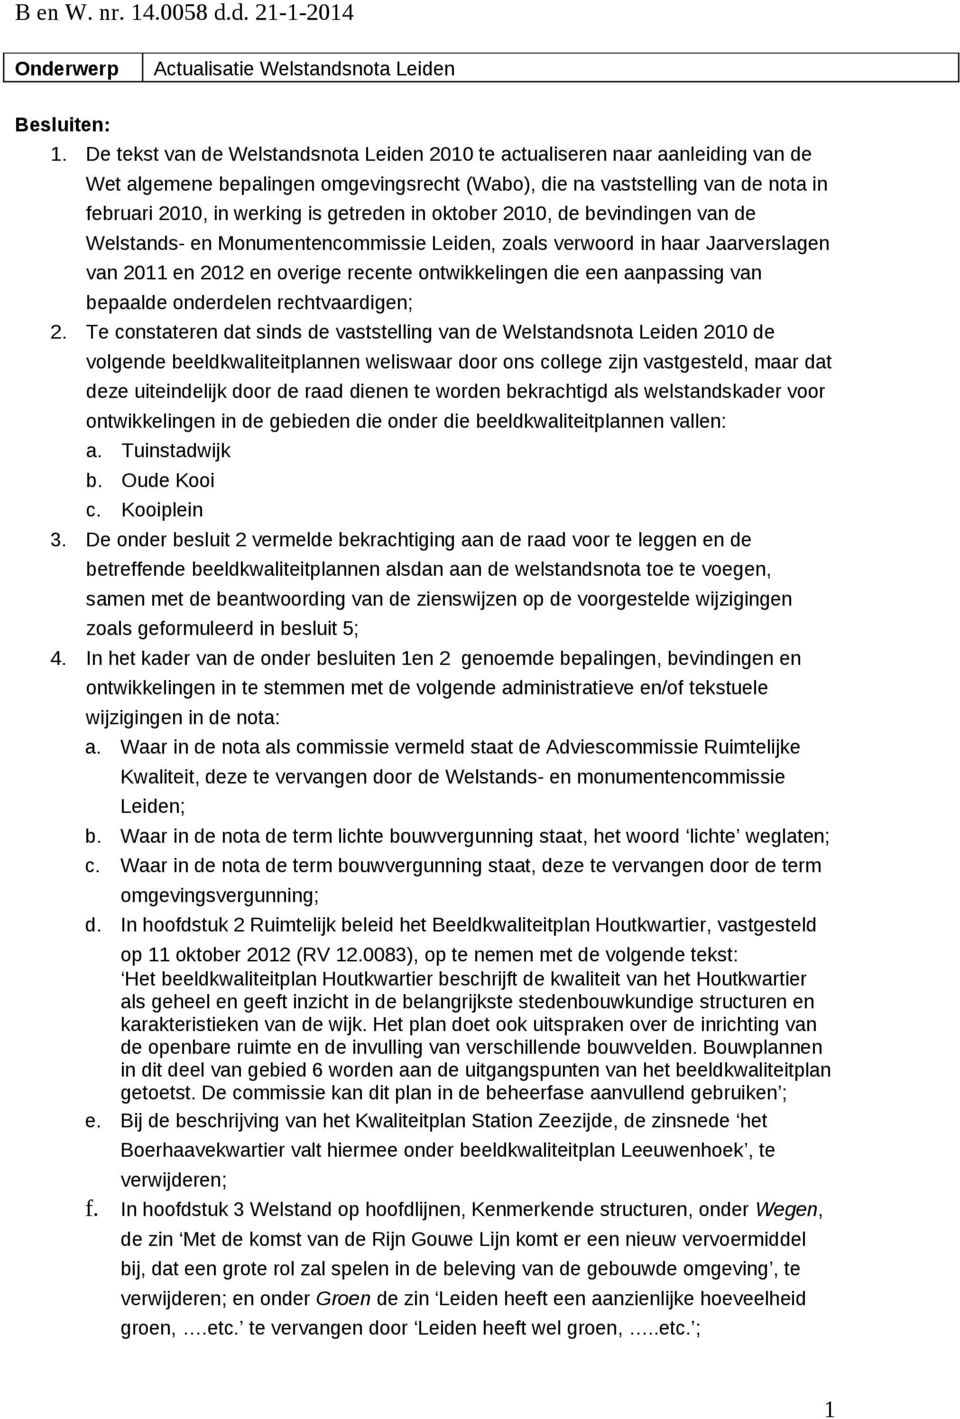 getreden in oktober 2010, de bevindingen van de Welstands- en Monumentencommissie Leiden, zoals verwoord in haar Jaarverslagen van 2011 en 2012 en overige recente ontwikkelingen die een aanpassing